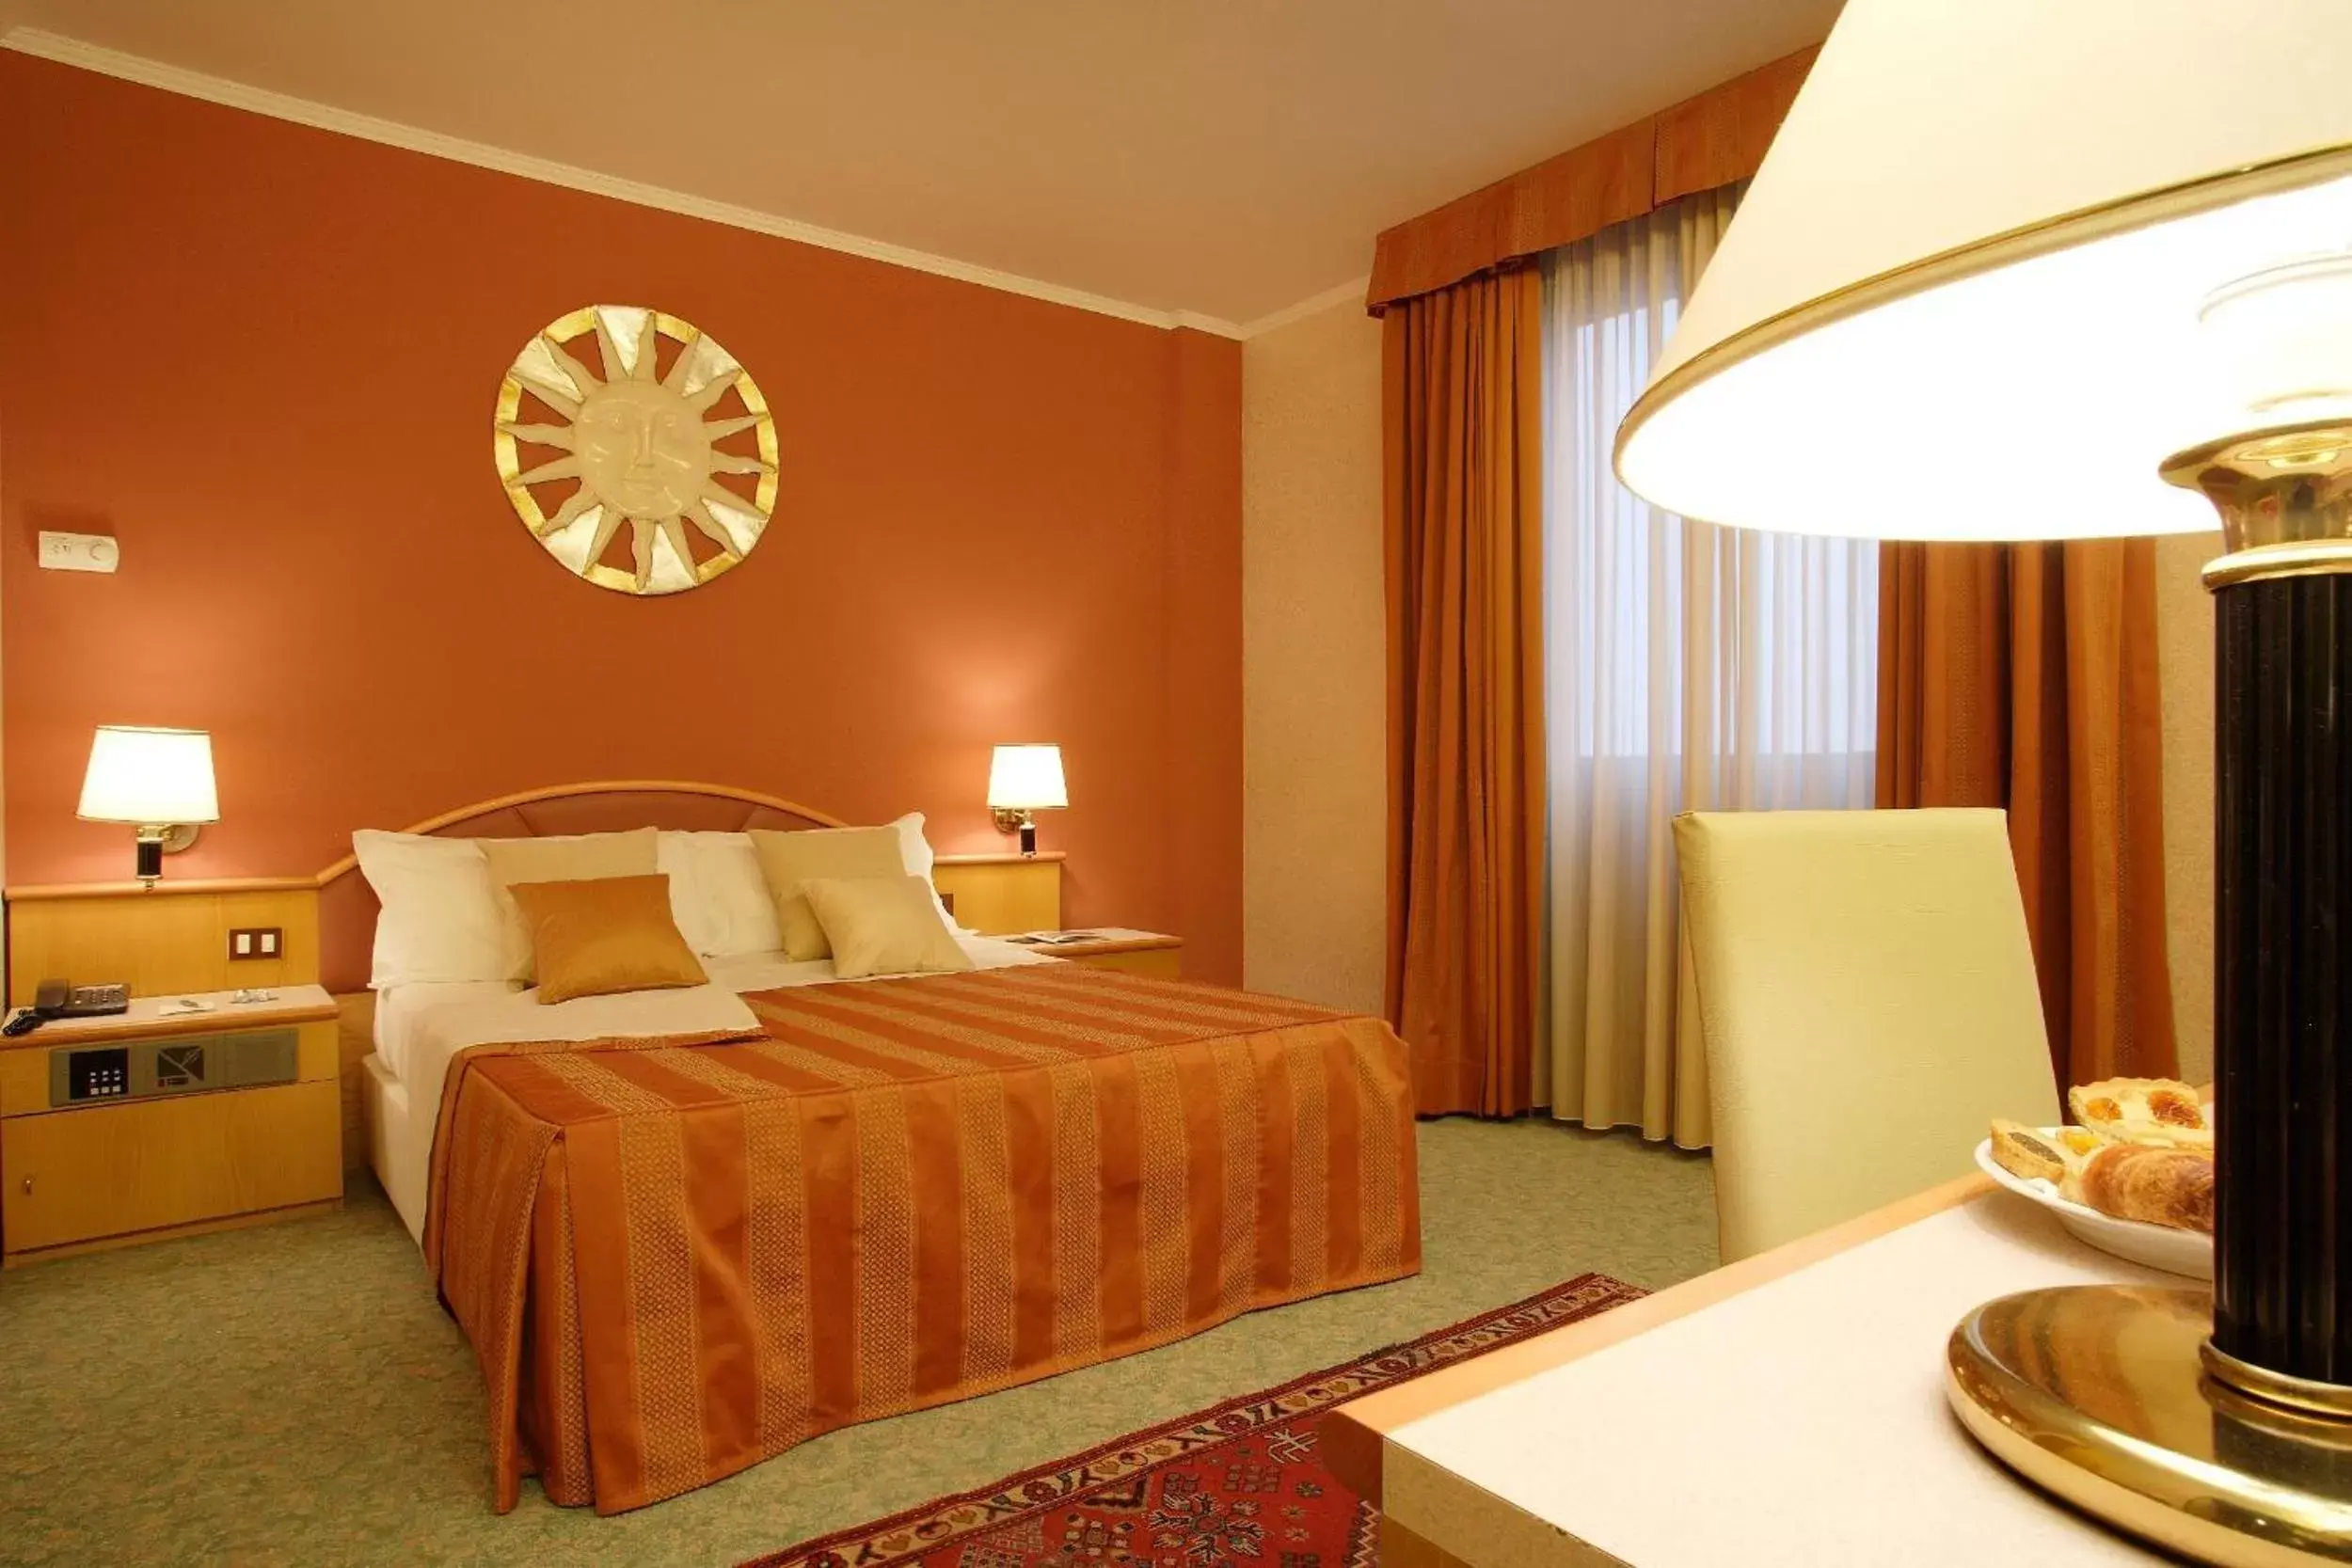 Bedroom, Bed in Antony Hotel - Venice Airport